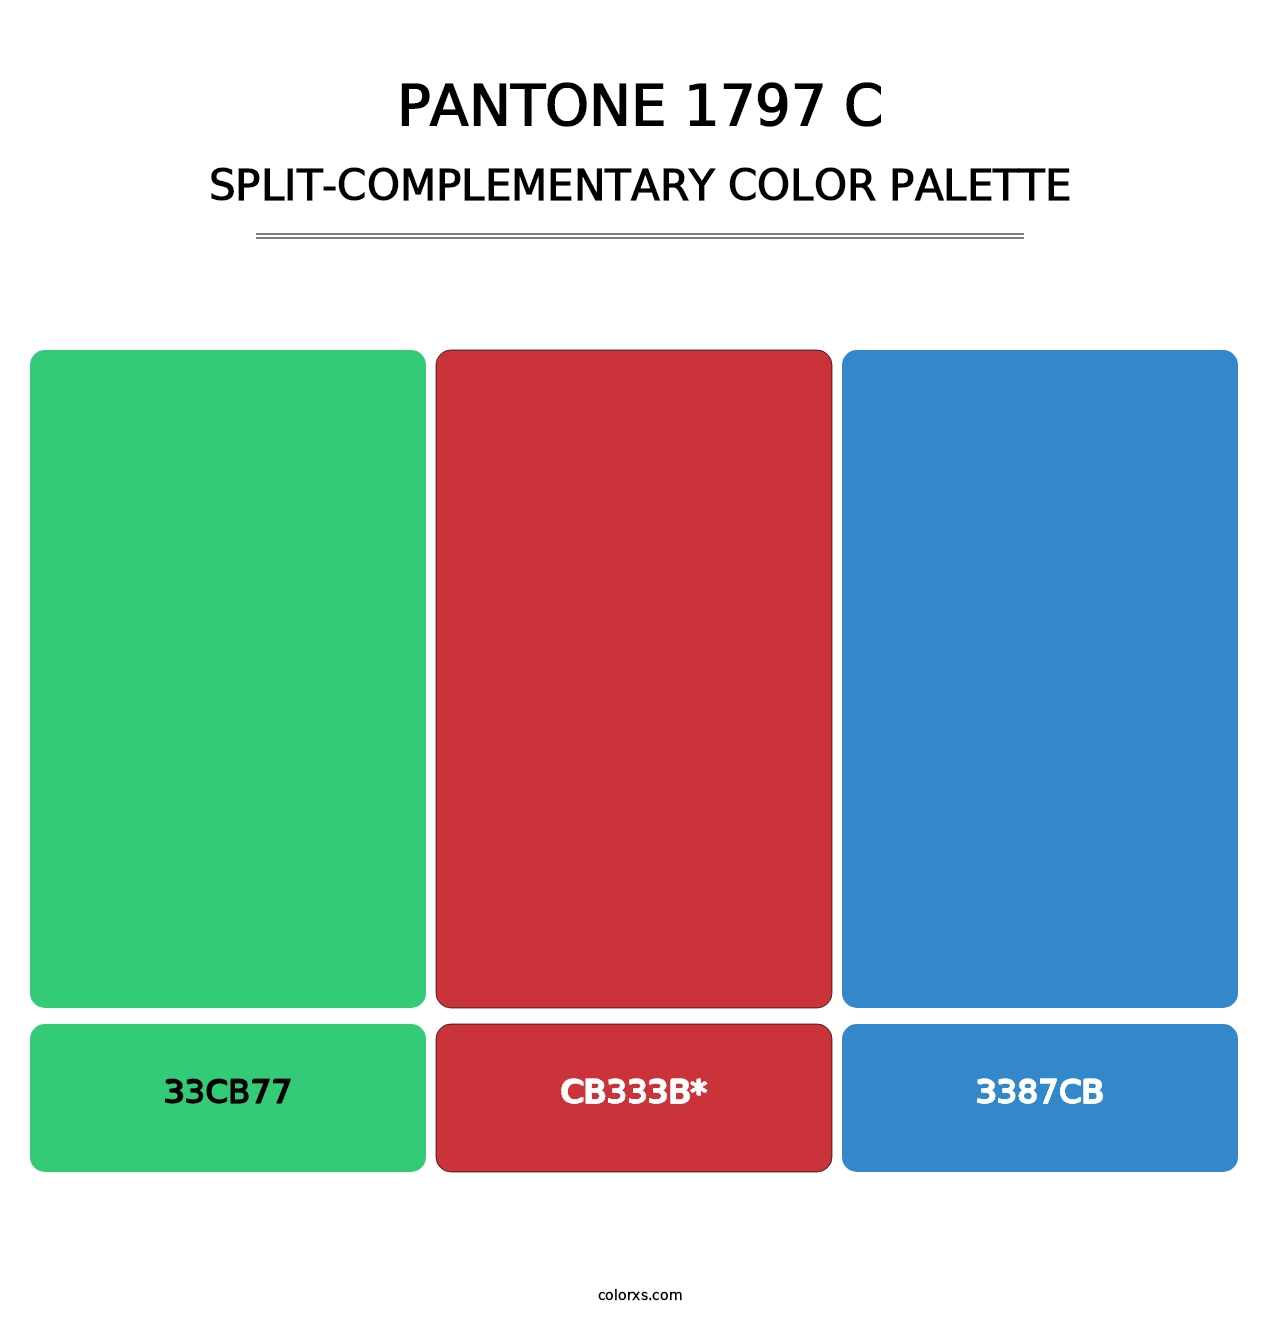 PANTONE 1797 C - Split-Complementary Color Palette